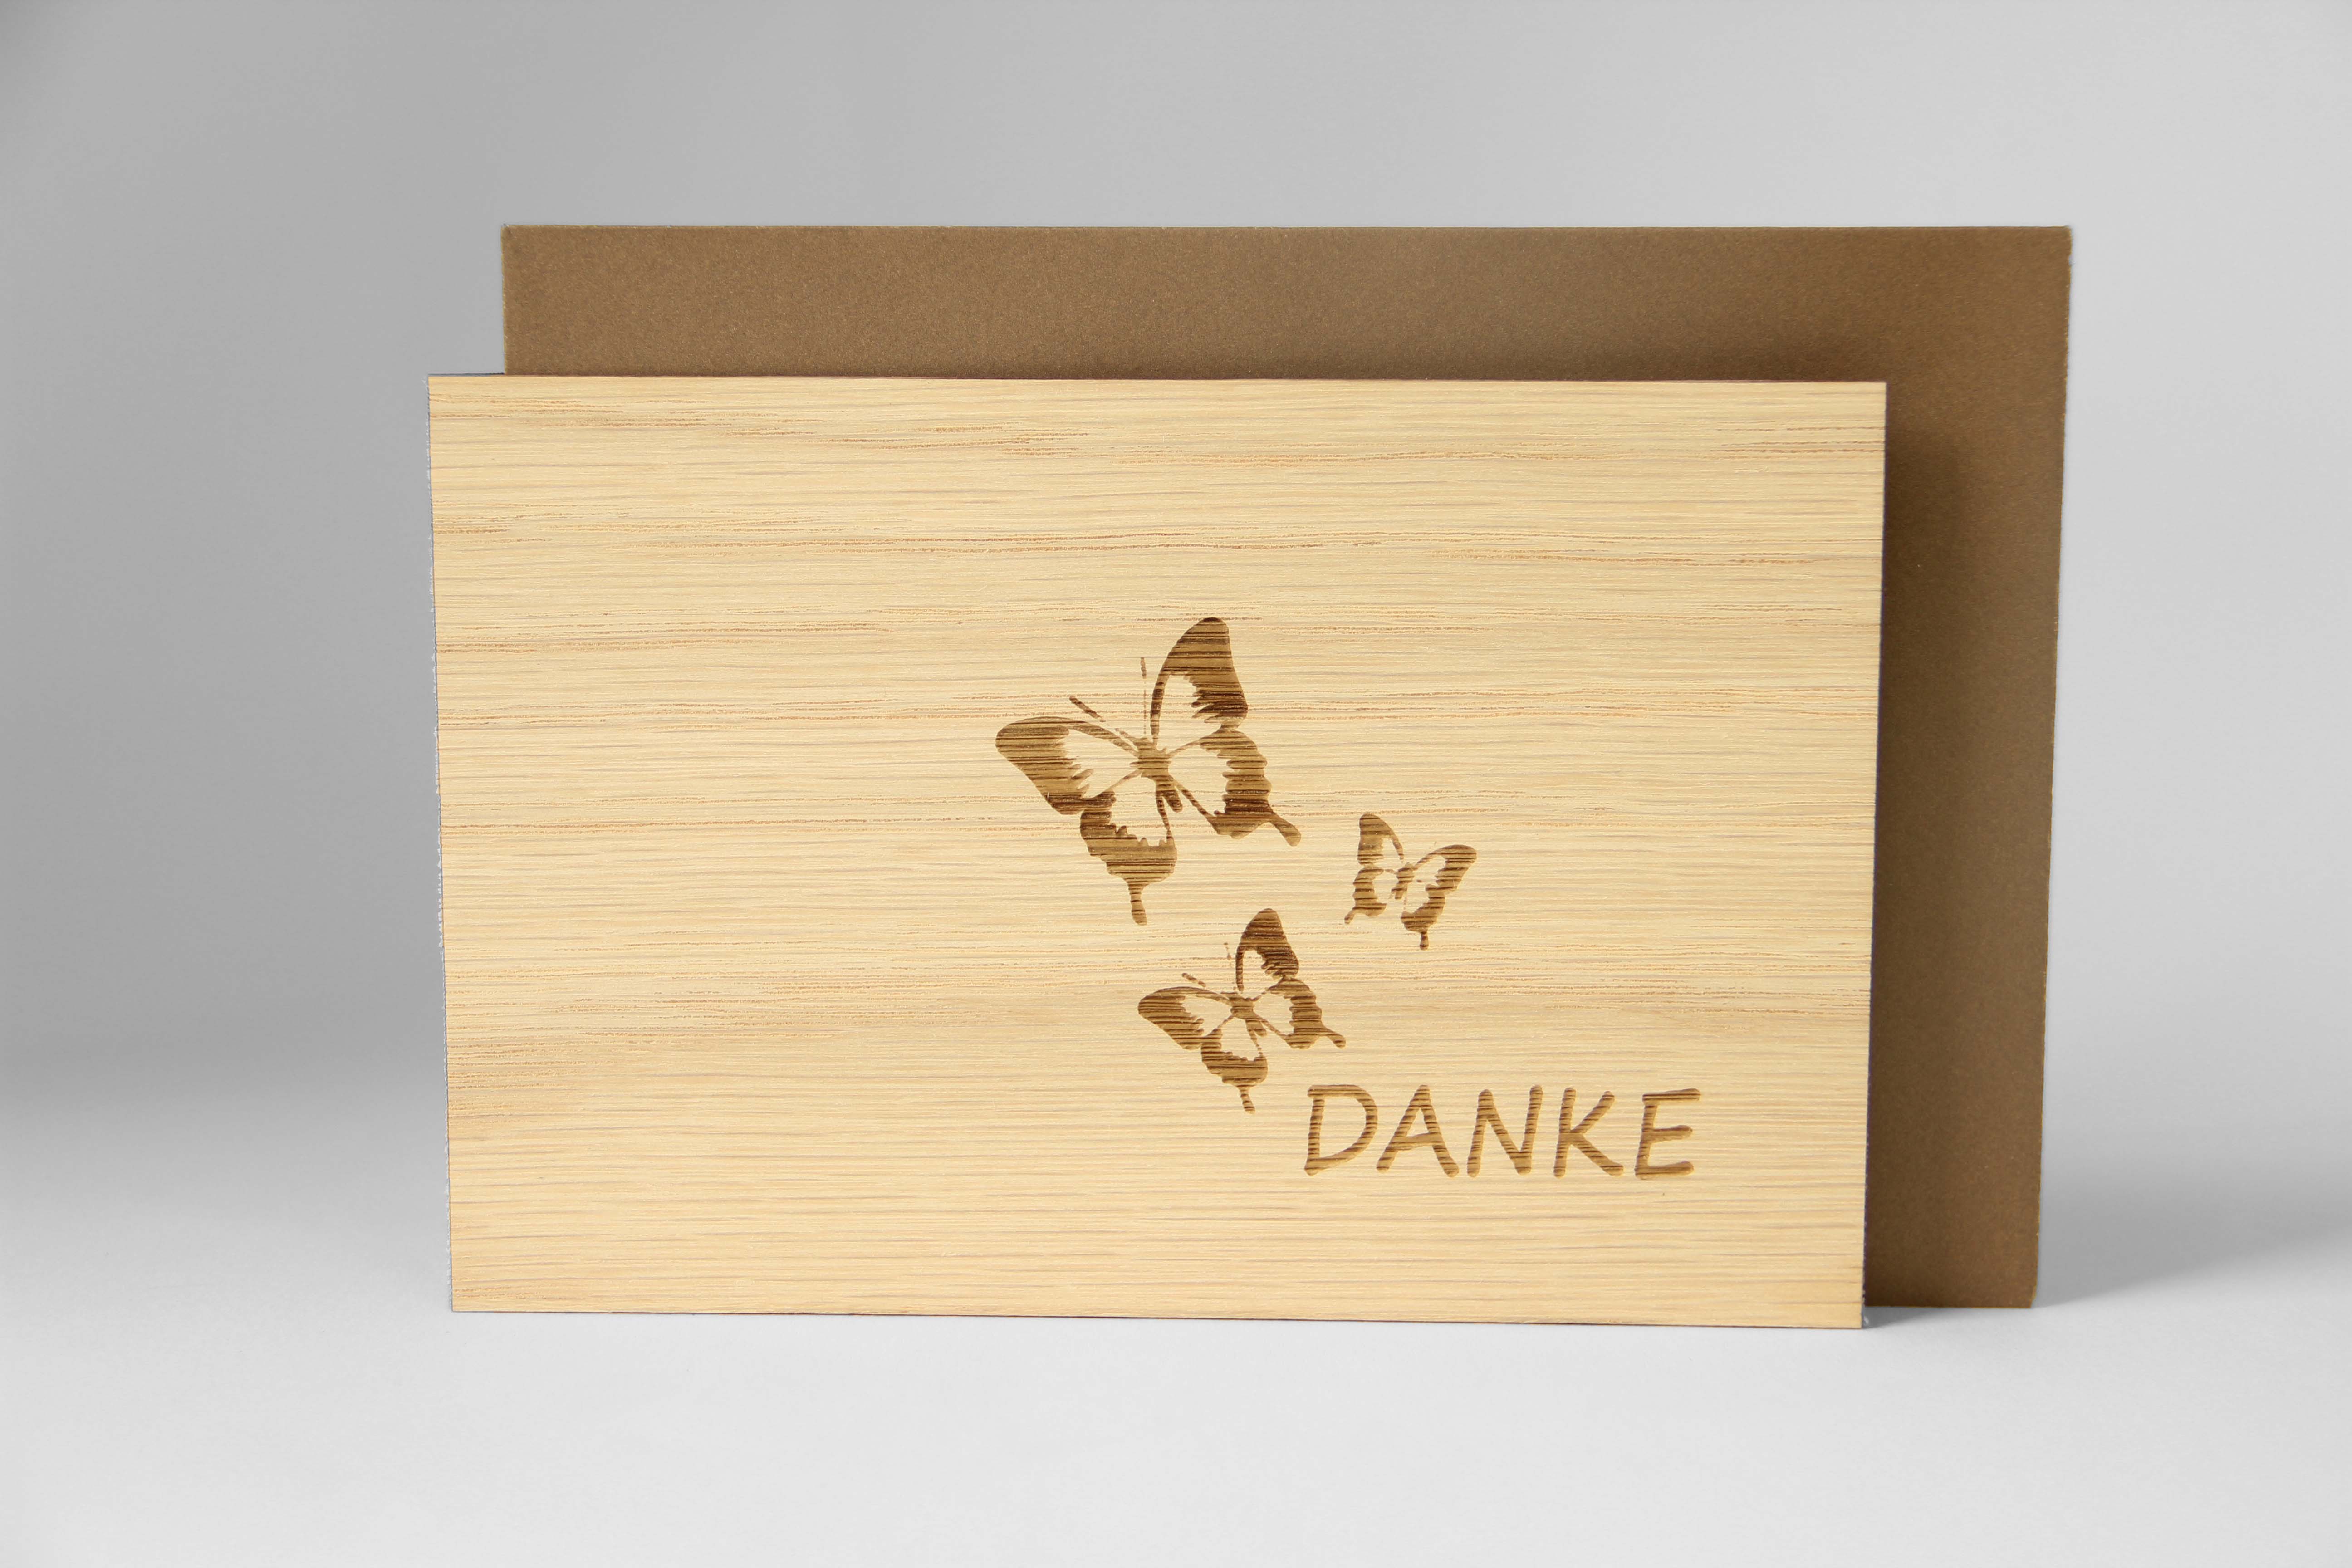 Holzgrusskarten - Dankeskarte "Danke" aus Eiche, Schmetterling